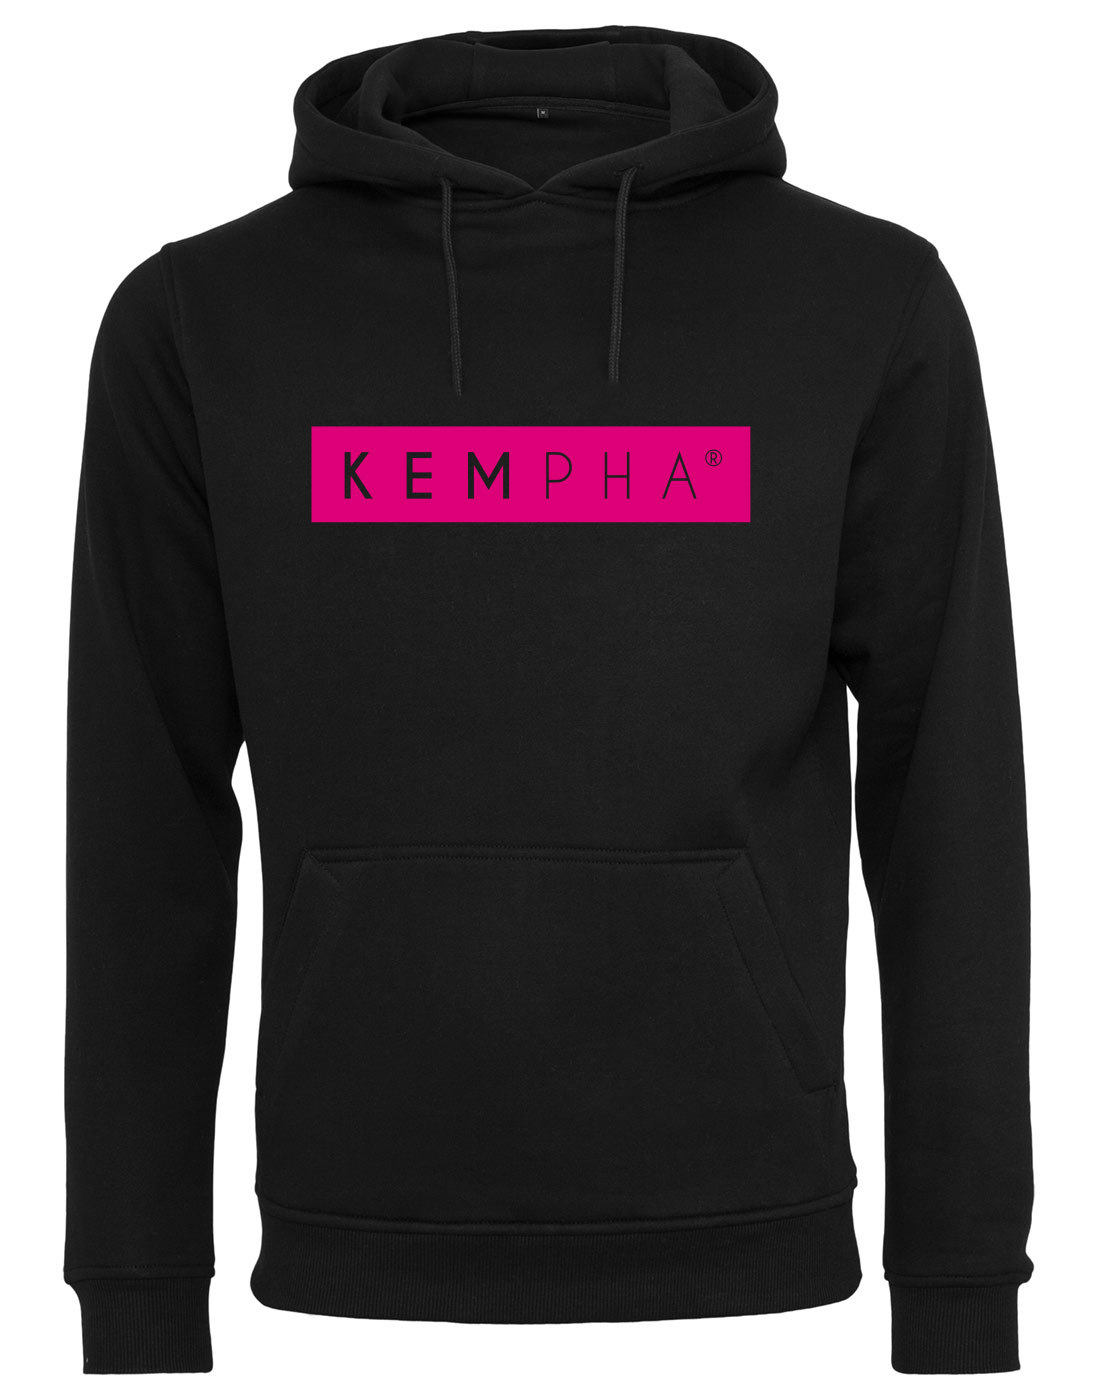 Kempha Premium Hoodie NEONraspberry auf schwarz